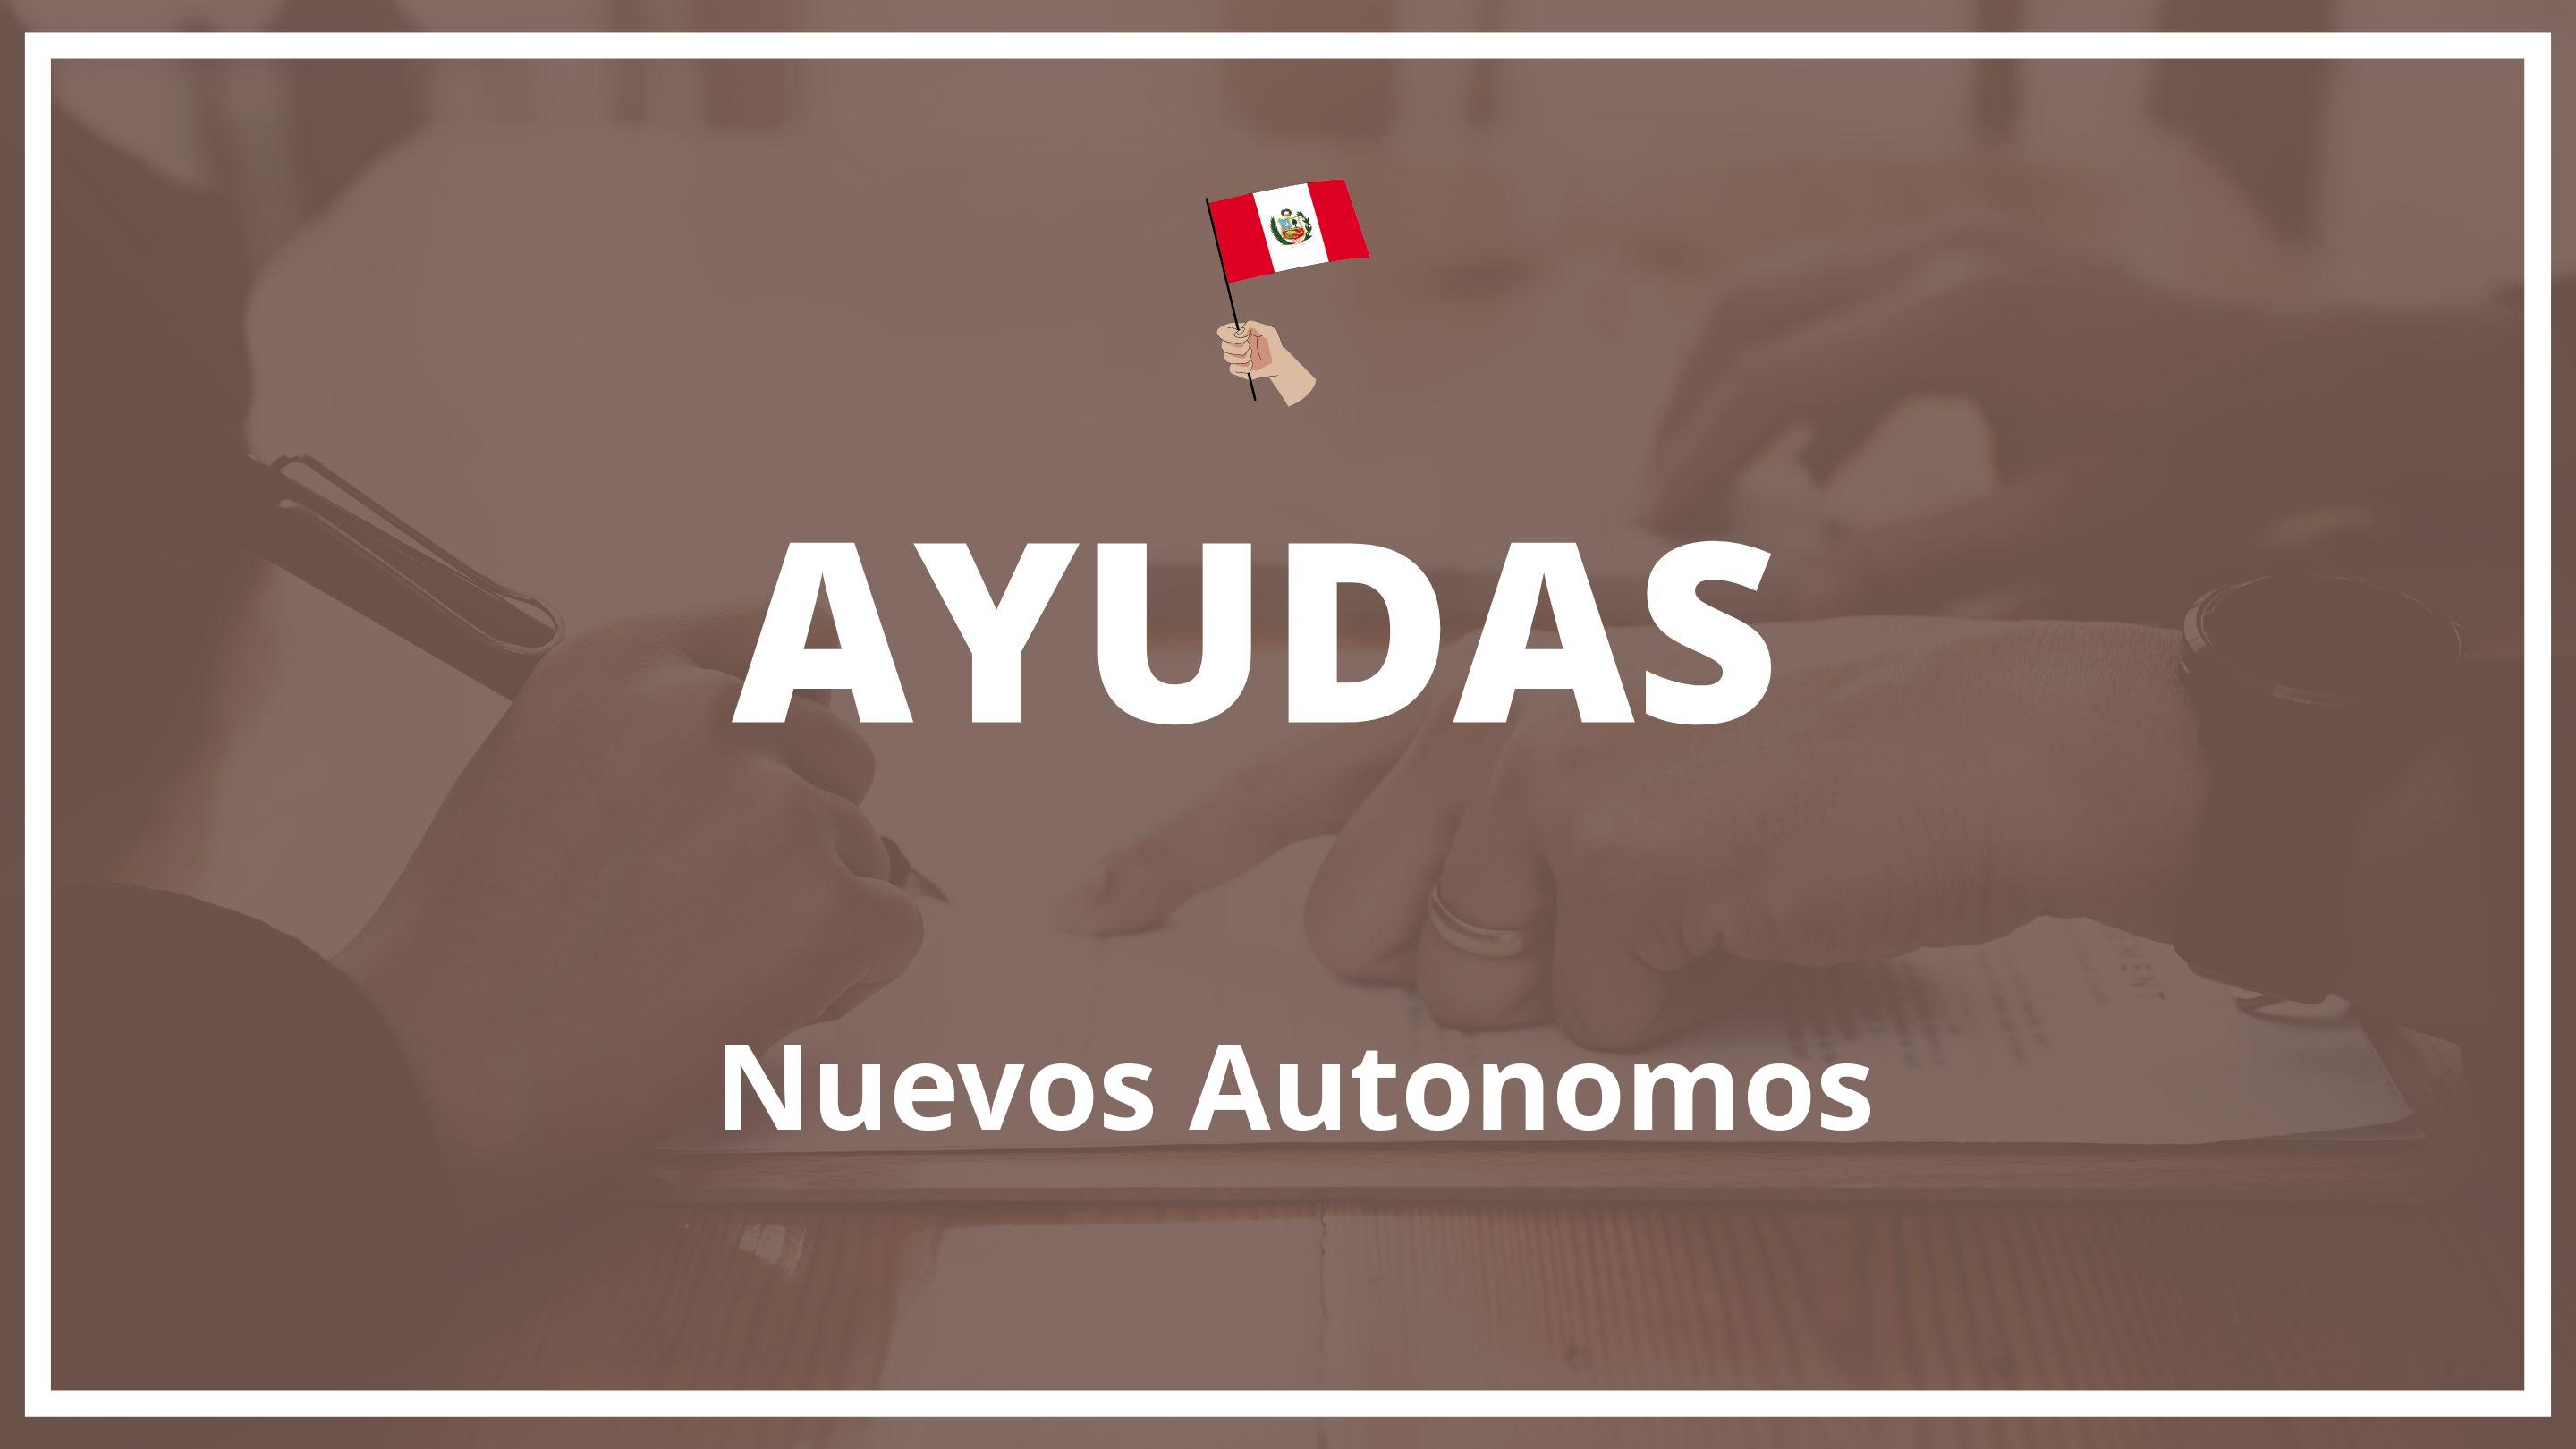 Ayudas para nuevos autonomos Peru